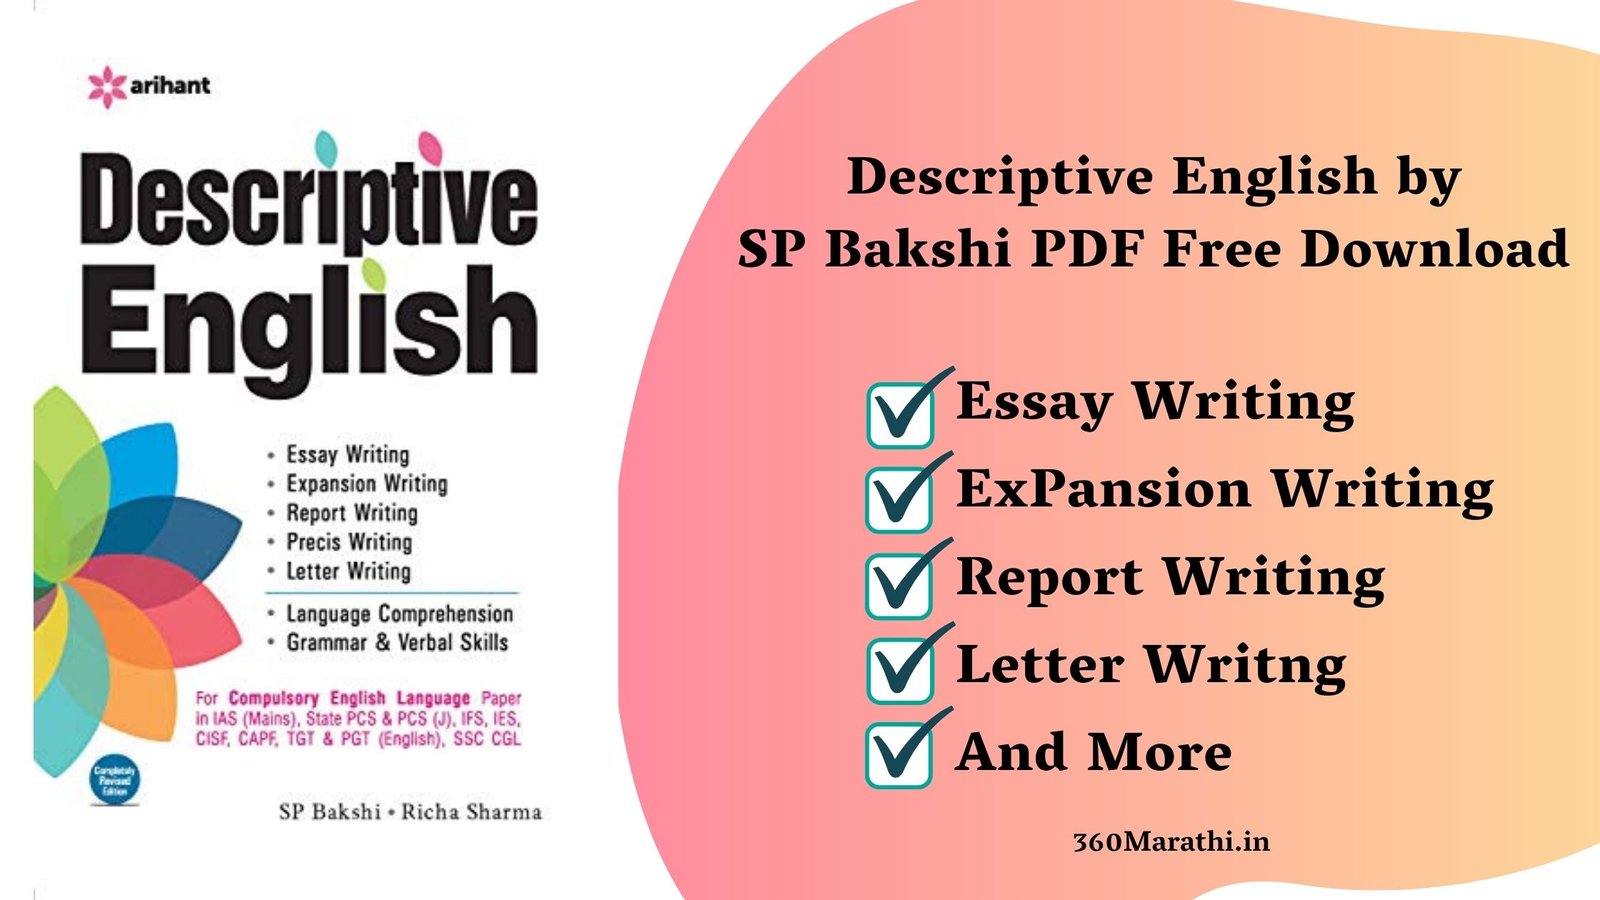 Descriptive English by SP Bakshi PDF Free Download